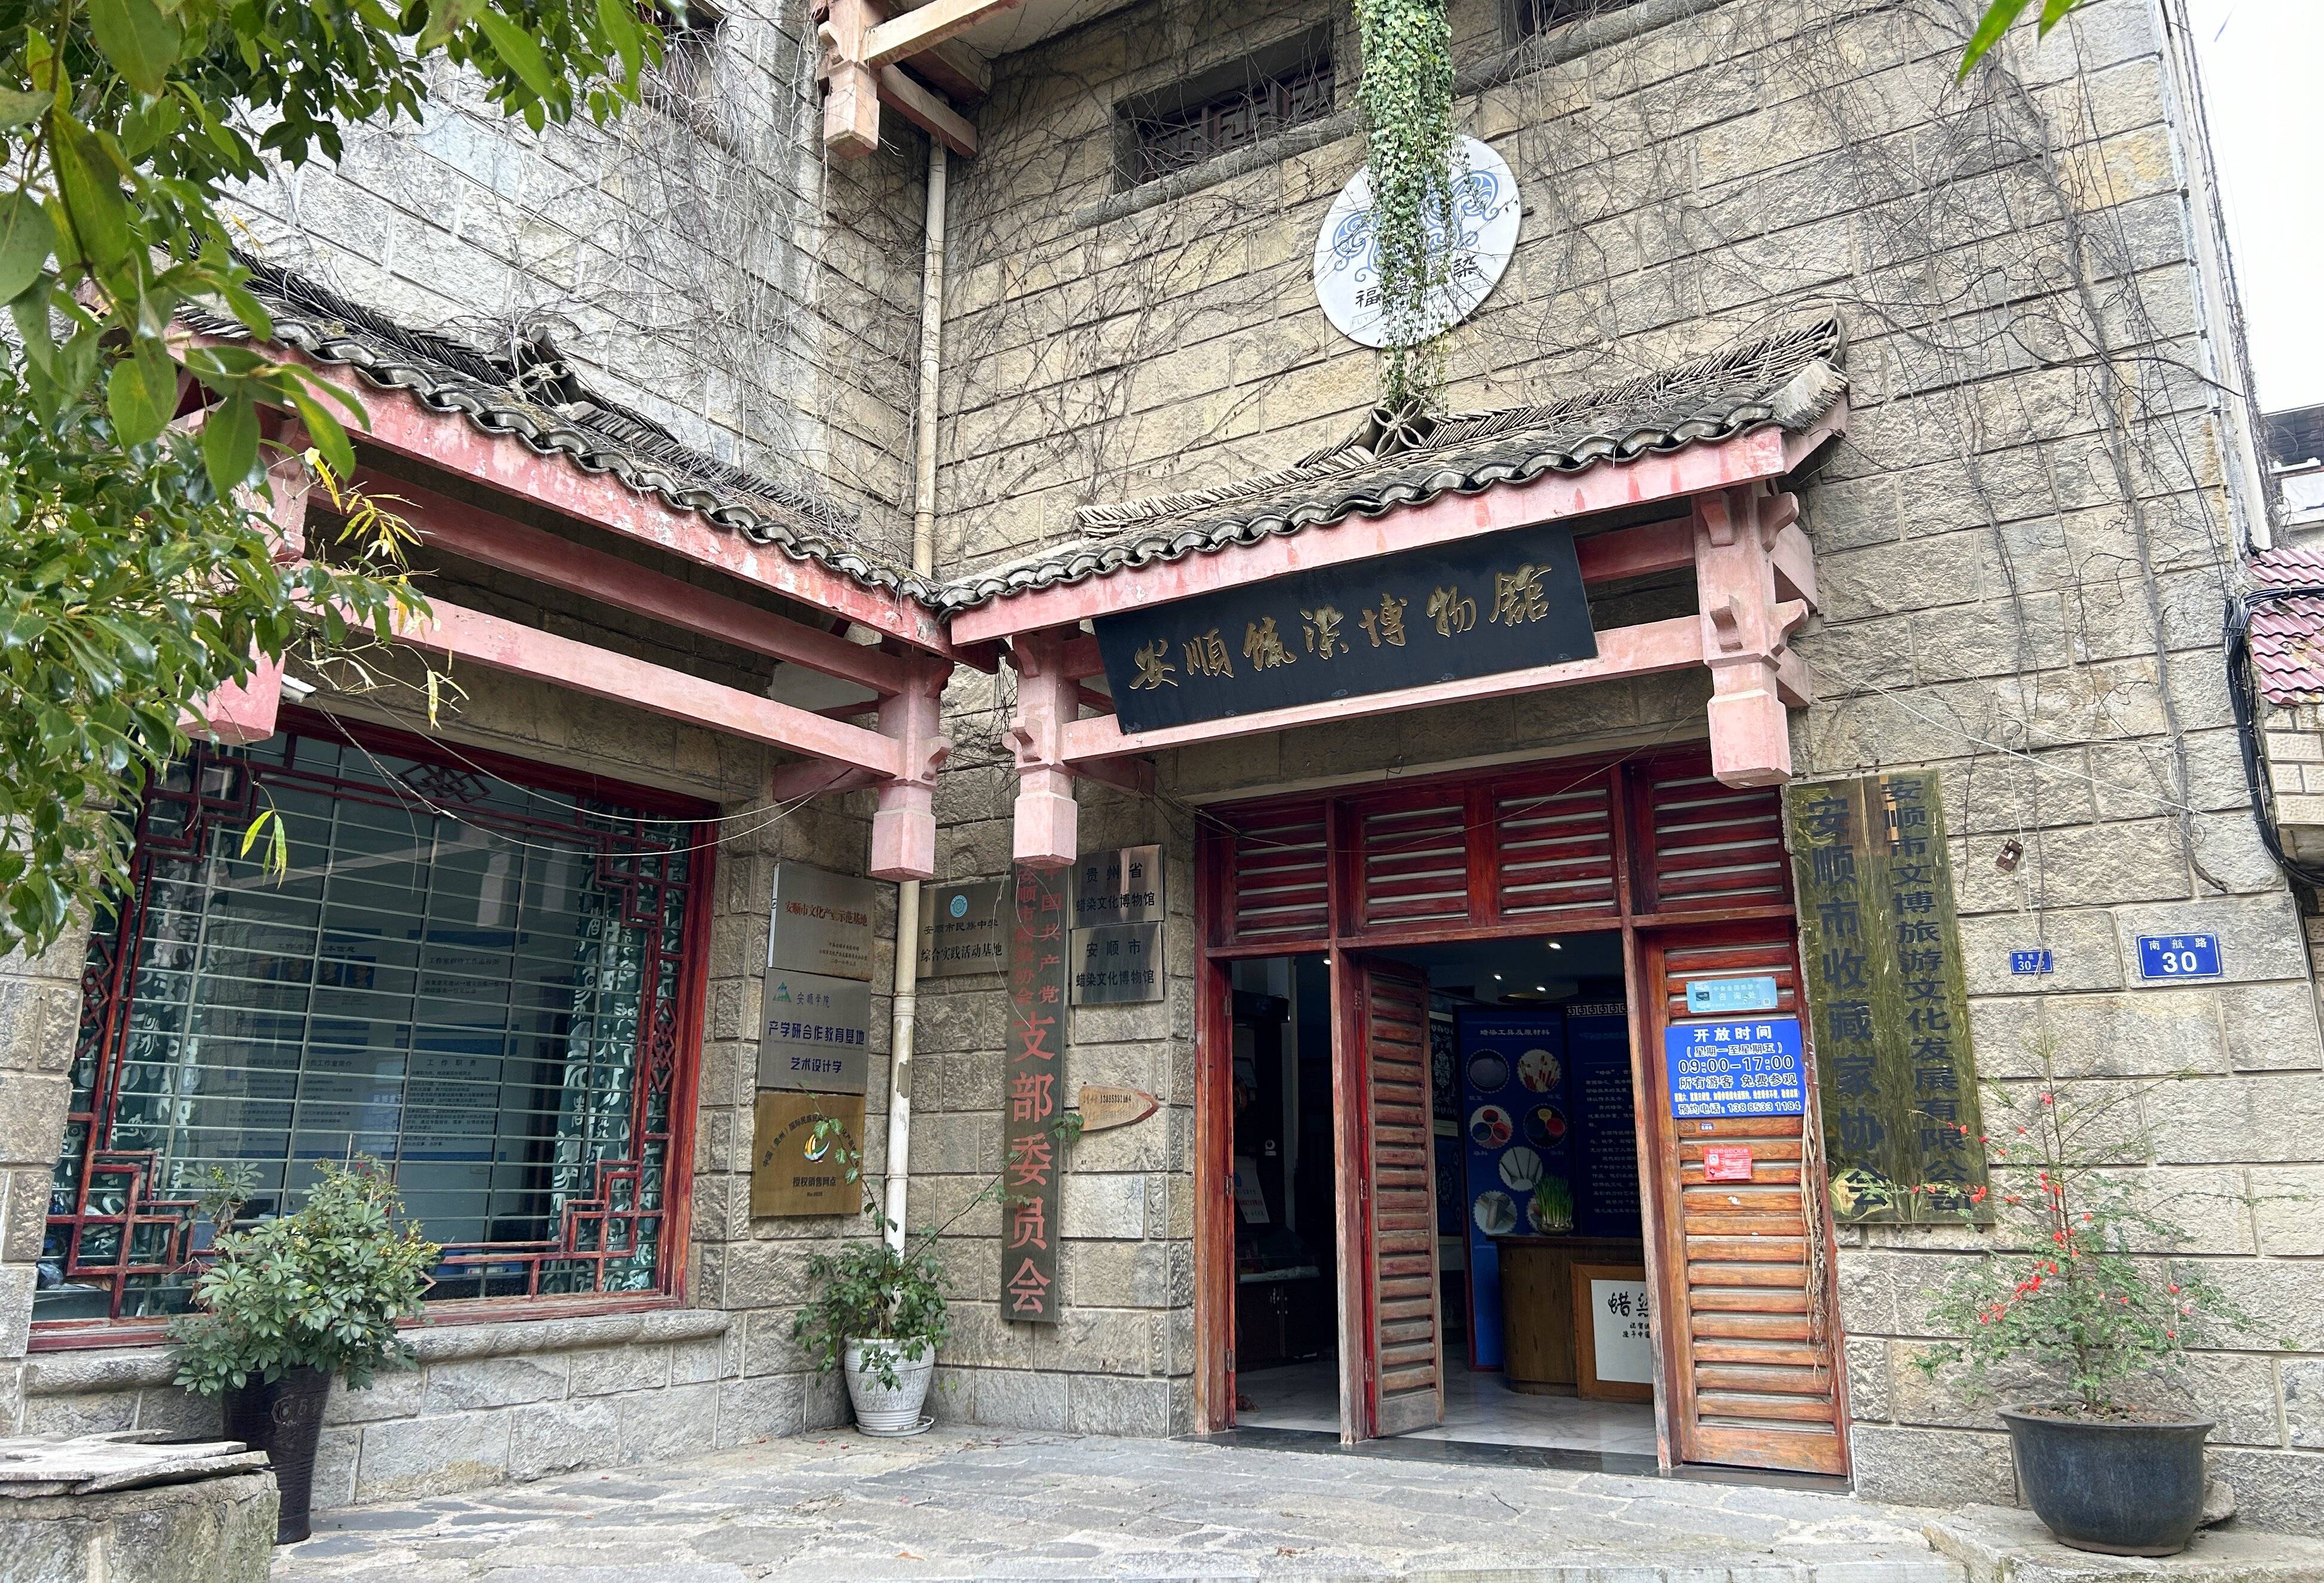 安顺福远博物馆位于安顺市西秀区南航路,走进这栋藤蔓包裹下的老楼,一